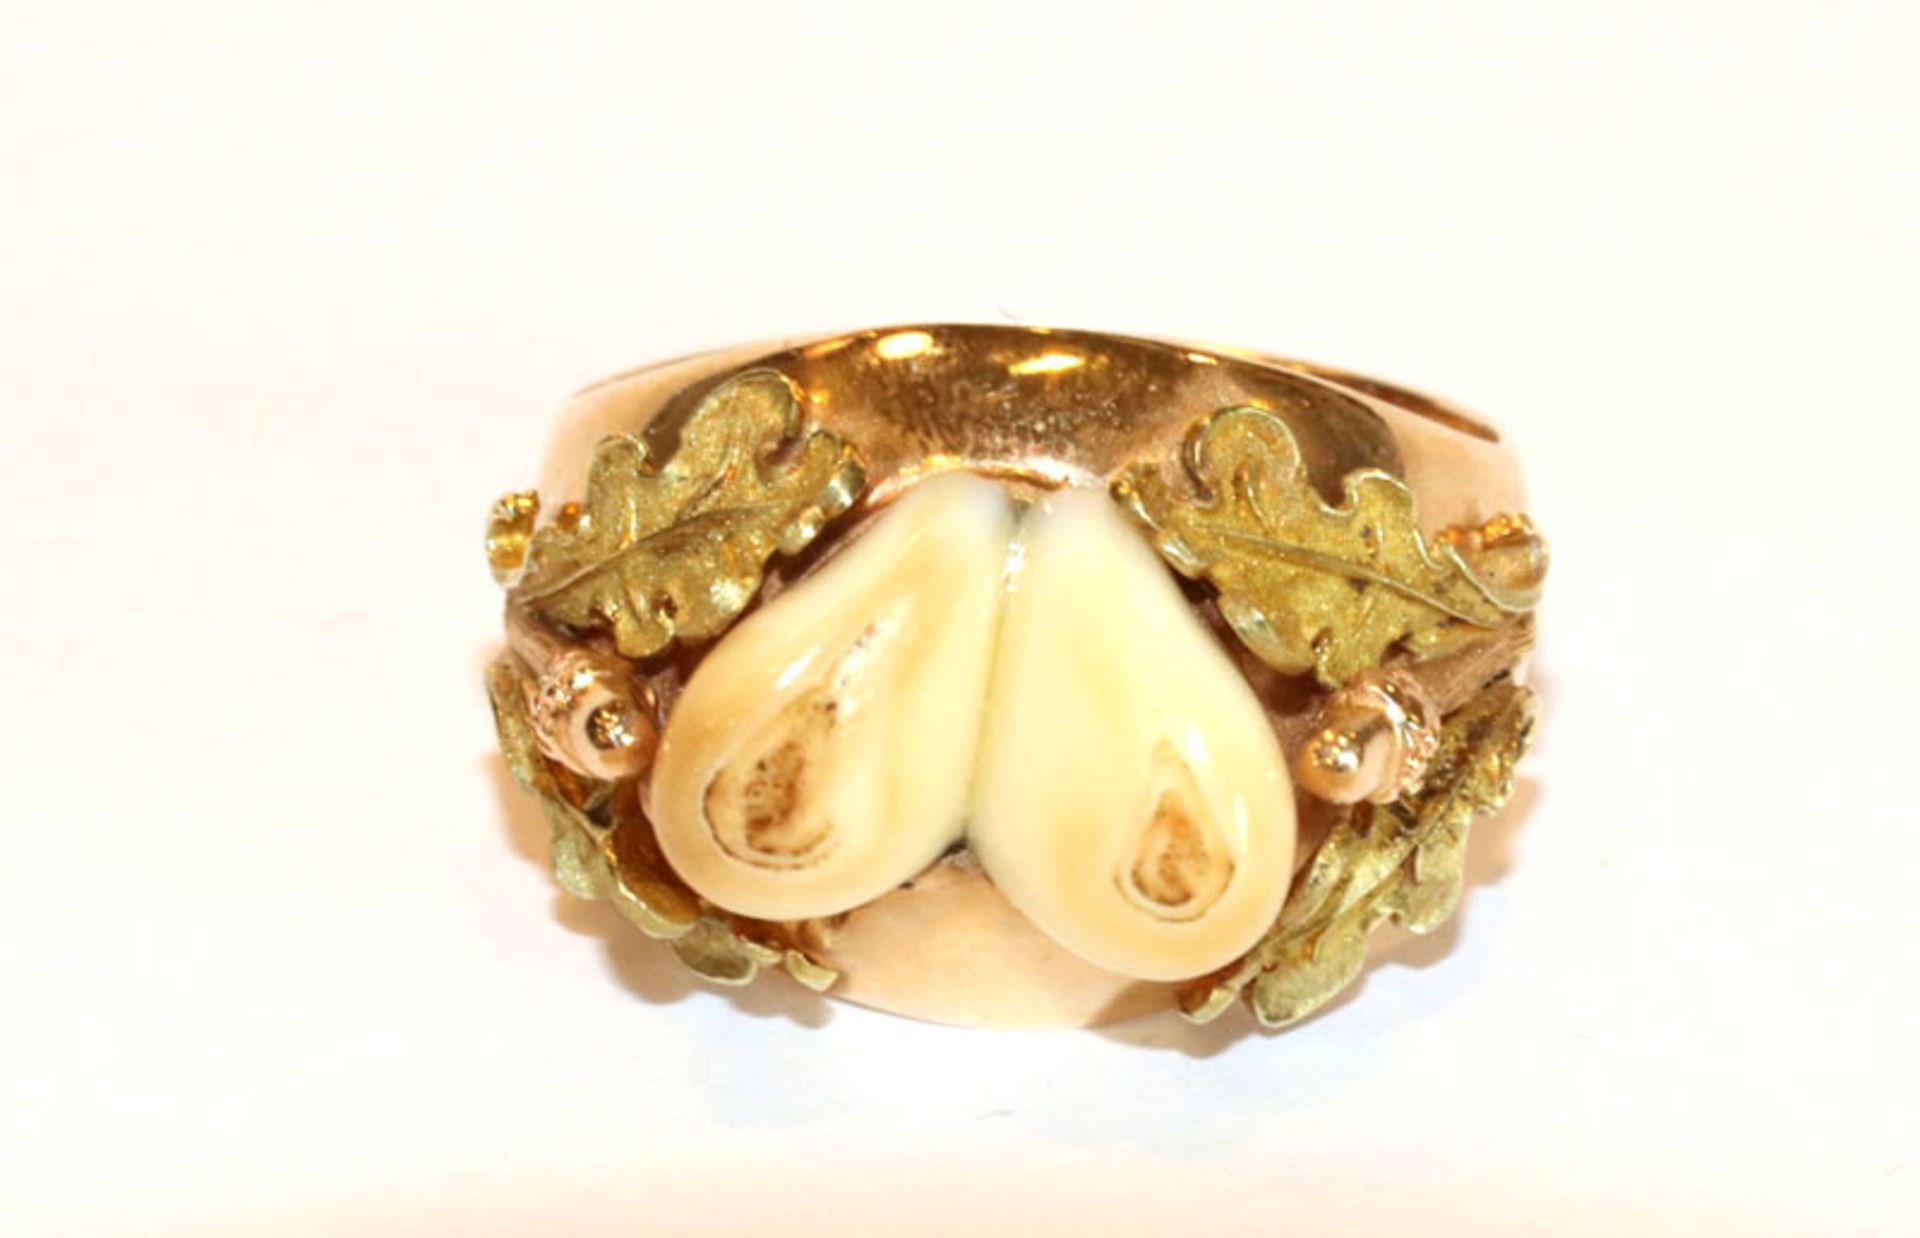 14 k Gelbgold Ring mit plastischem Eichenlaub und schönem Grandelpaar, Gr. 64, 8 gr., schöne